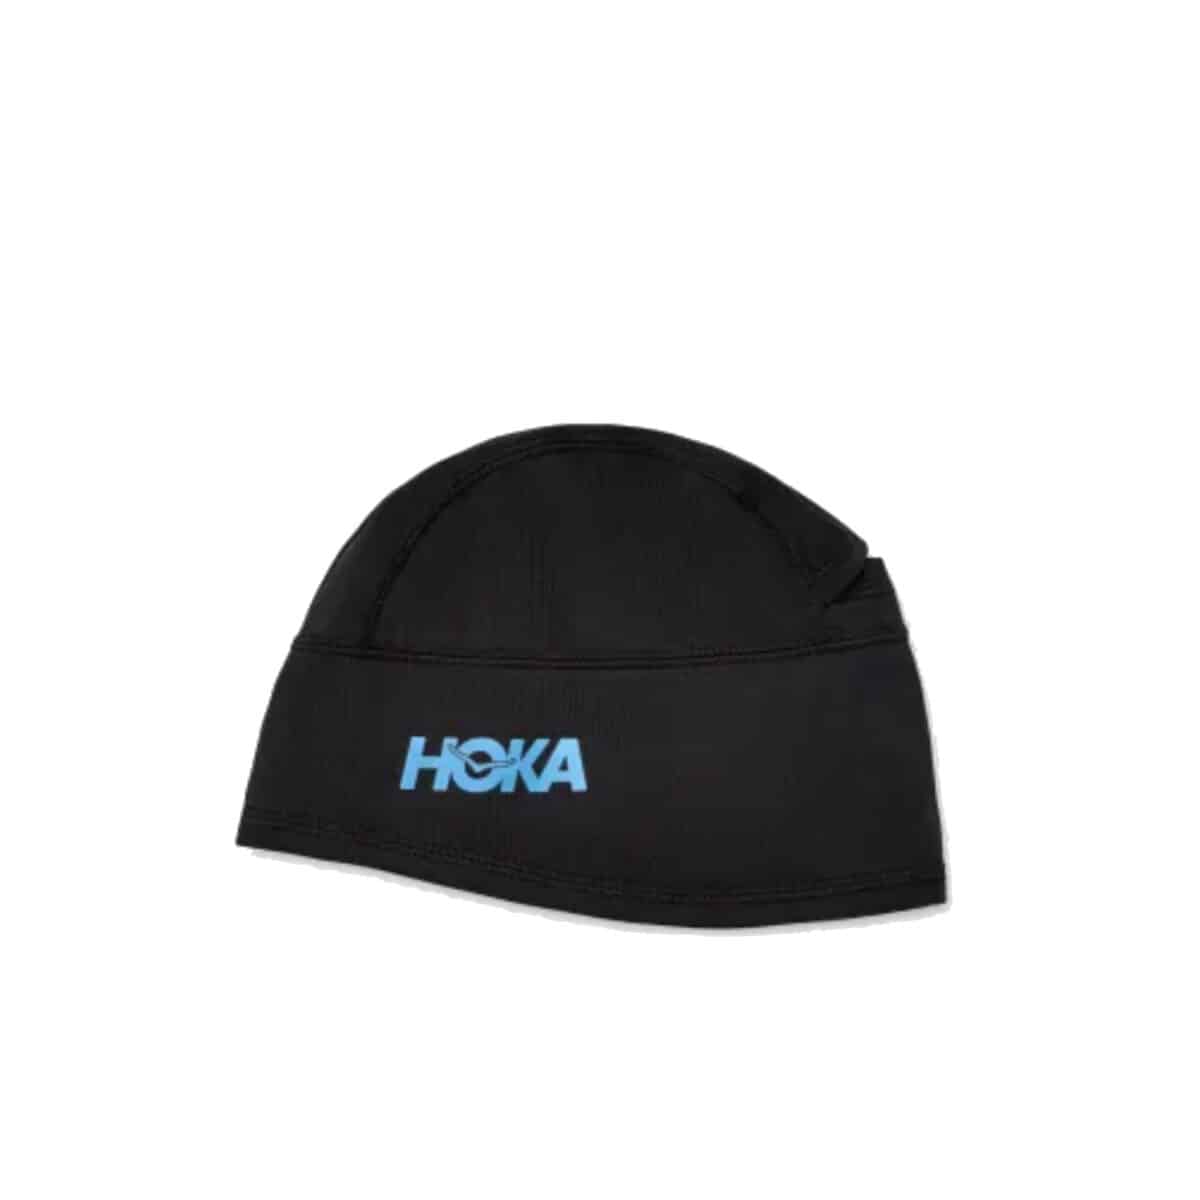 כובע גרב לריצה הוקה HOKA ColdSnap Fleece Beanie